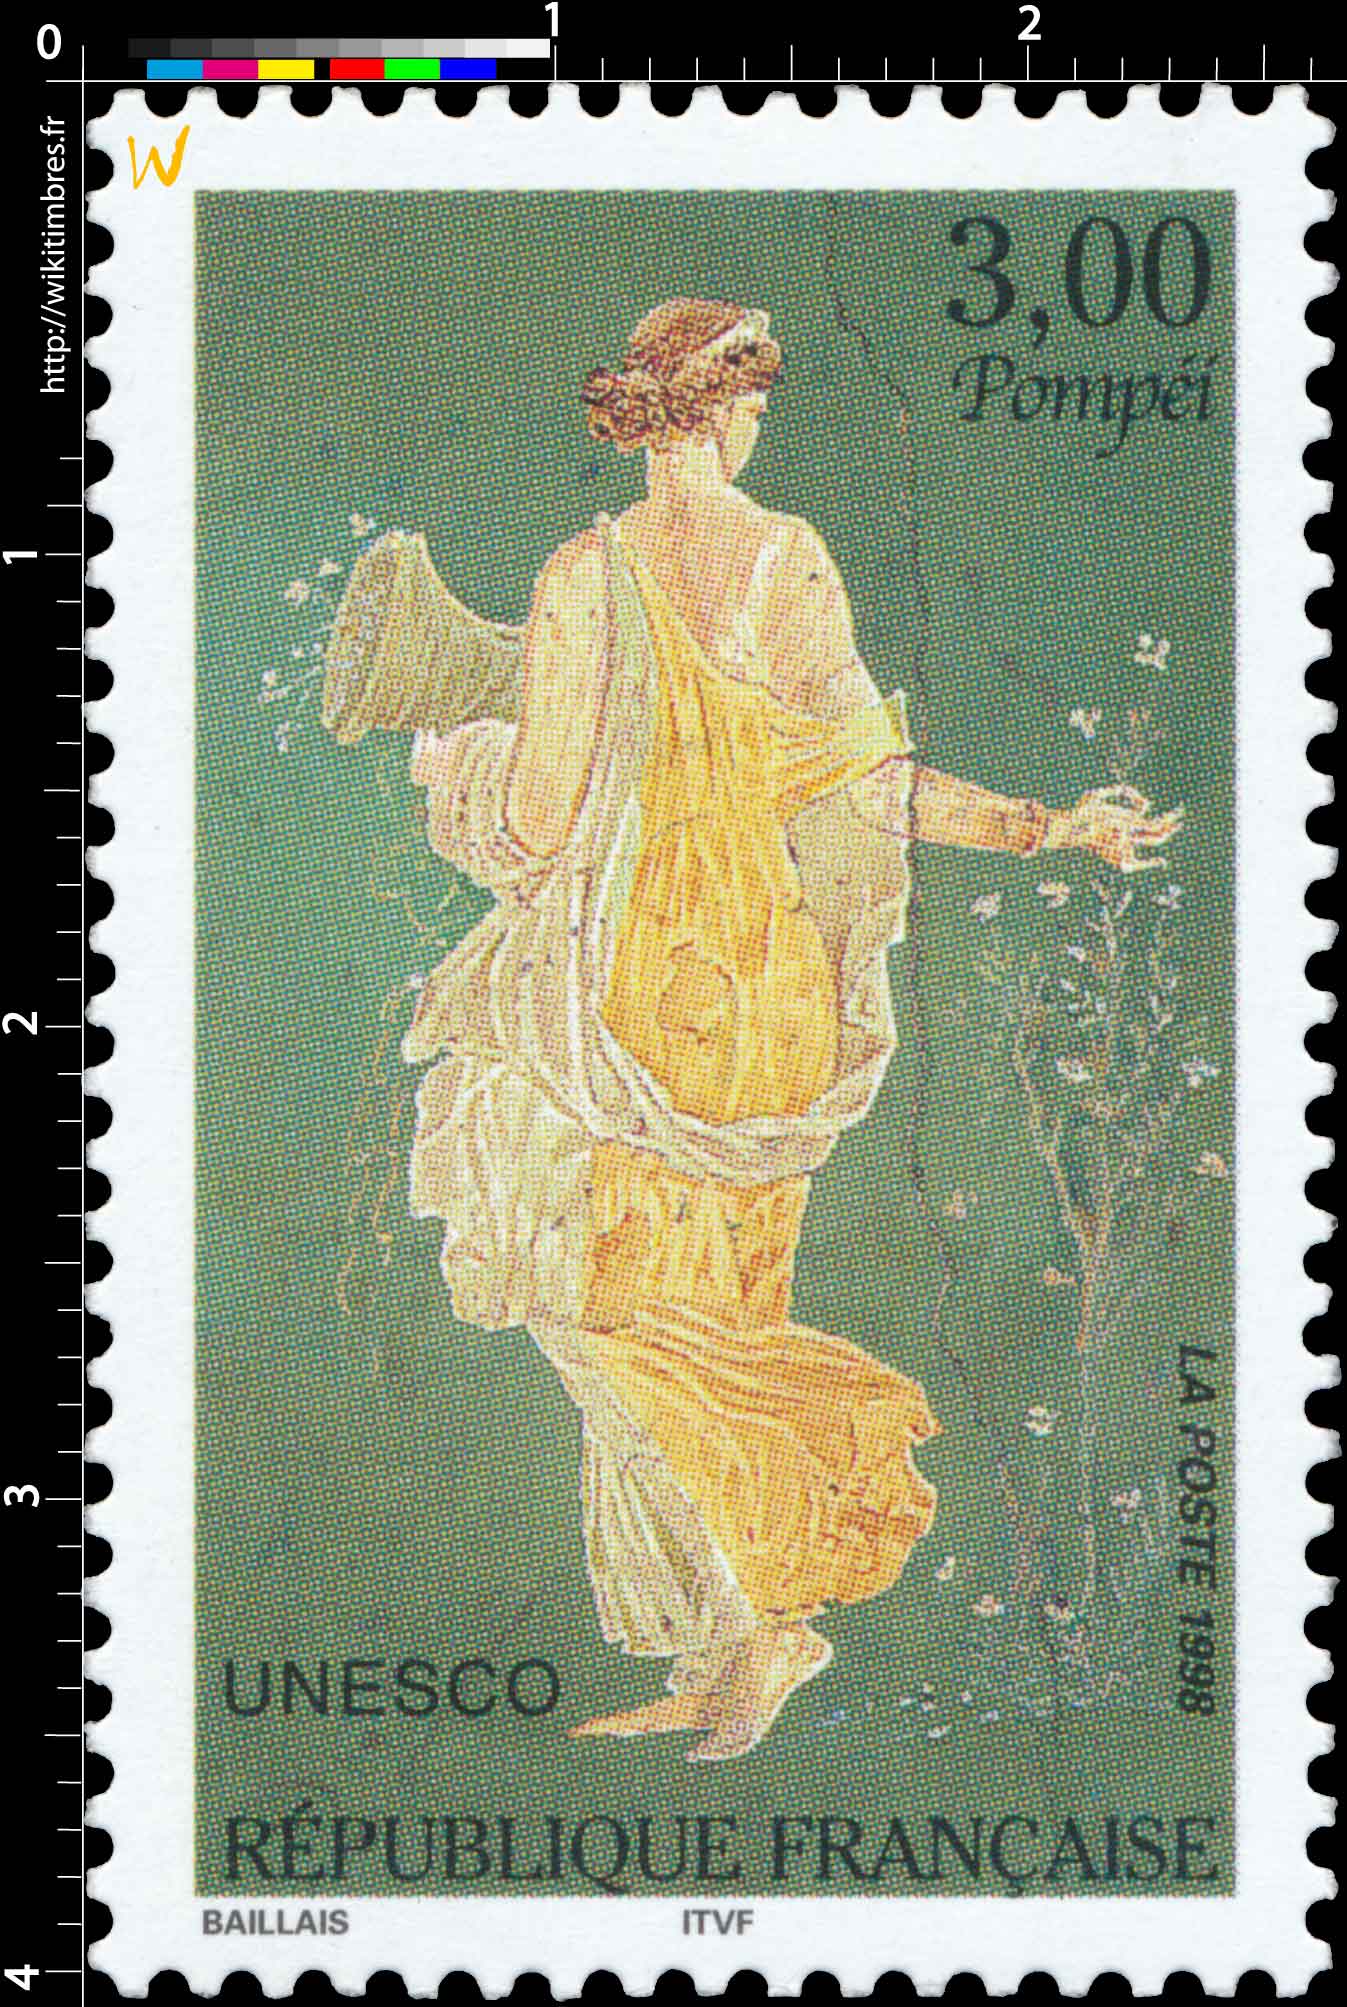 1998 UNESCO Pompéi